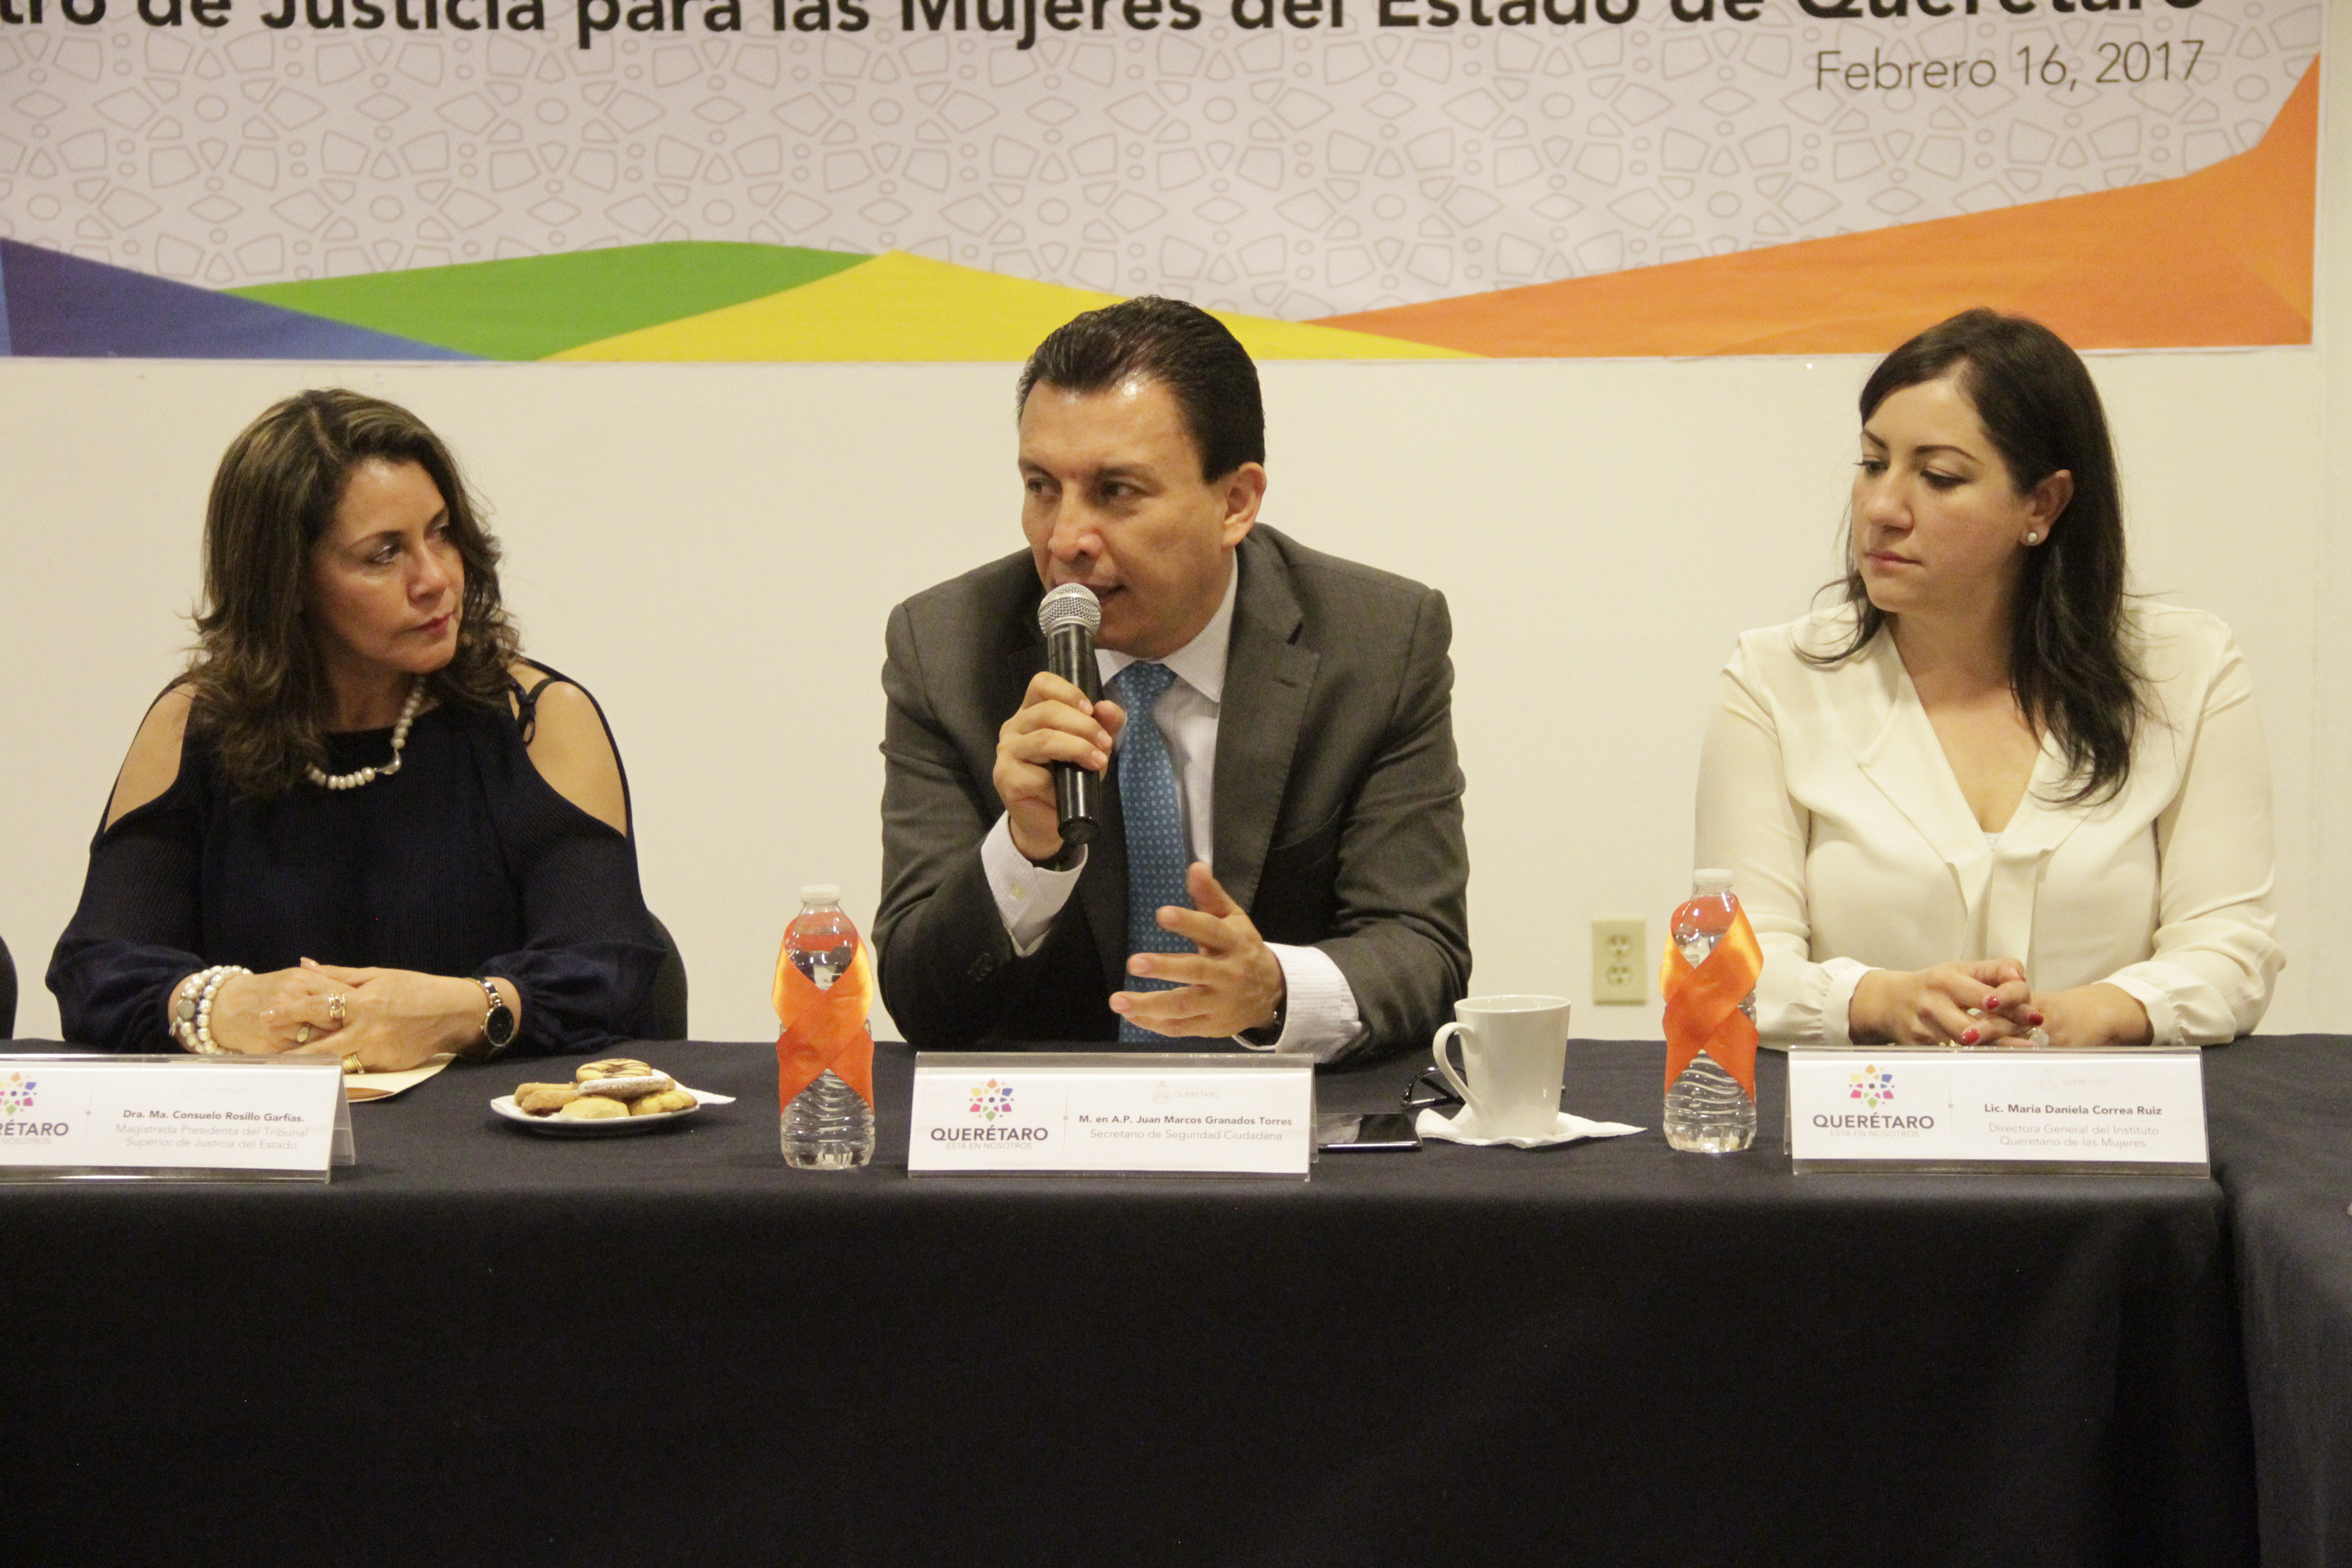  Firman convenio para operar Centro de Justicia para las Mujeres en Querétaro